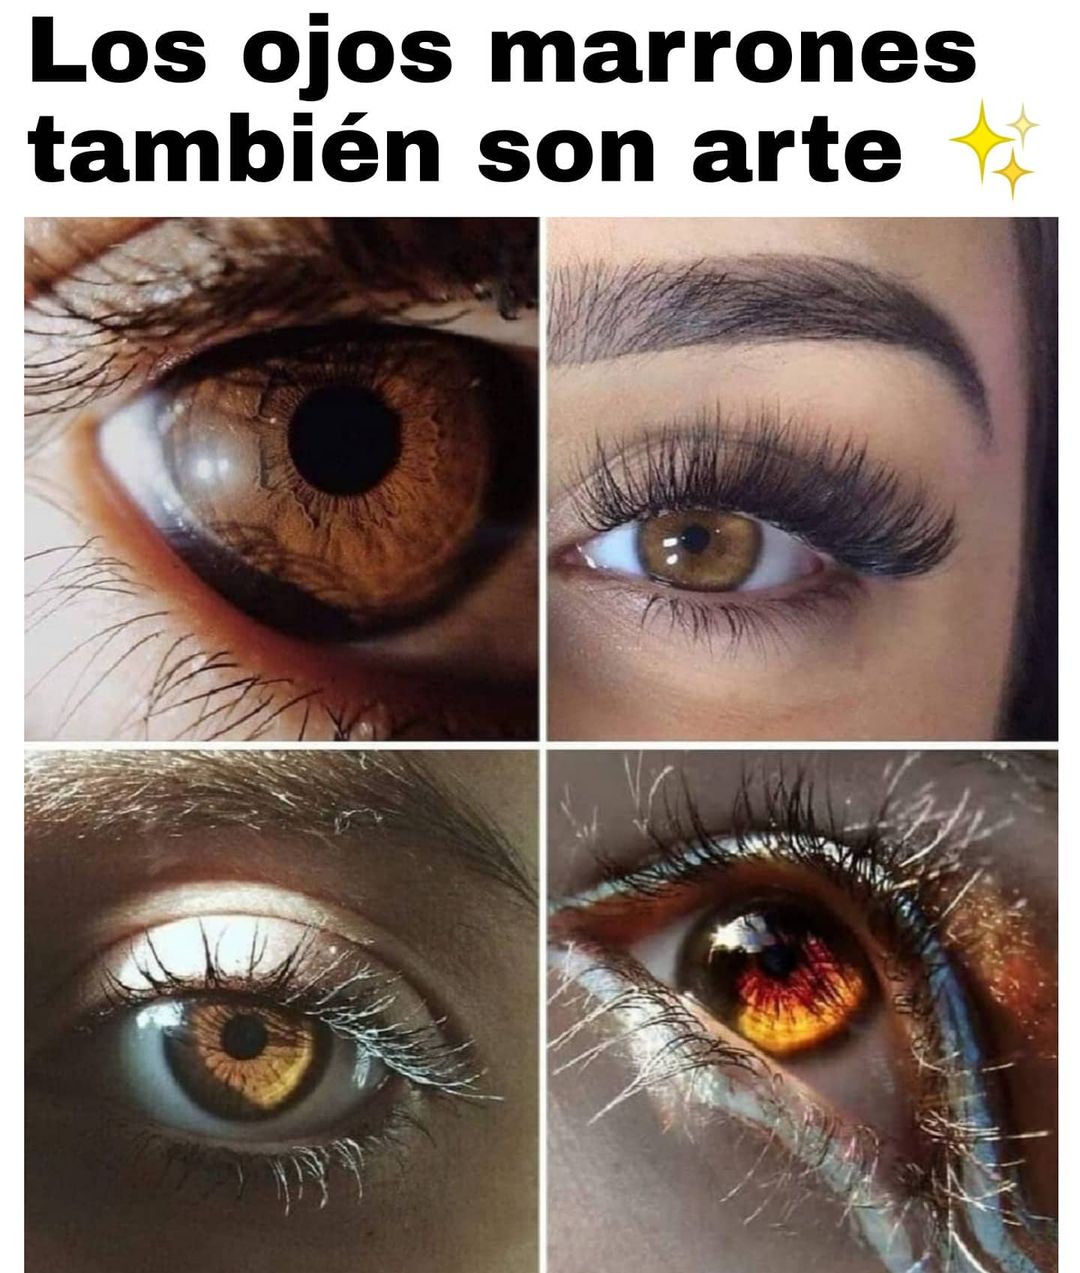 Los ojos marrones también son arte.